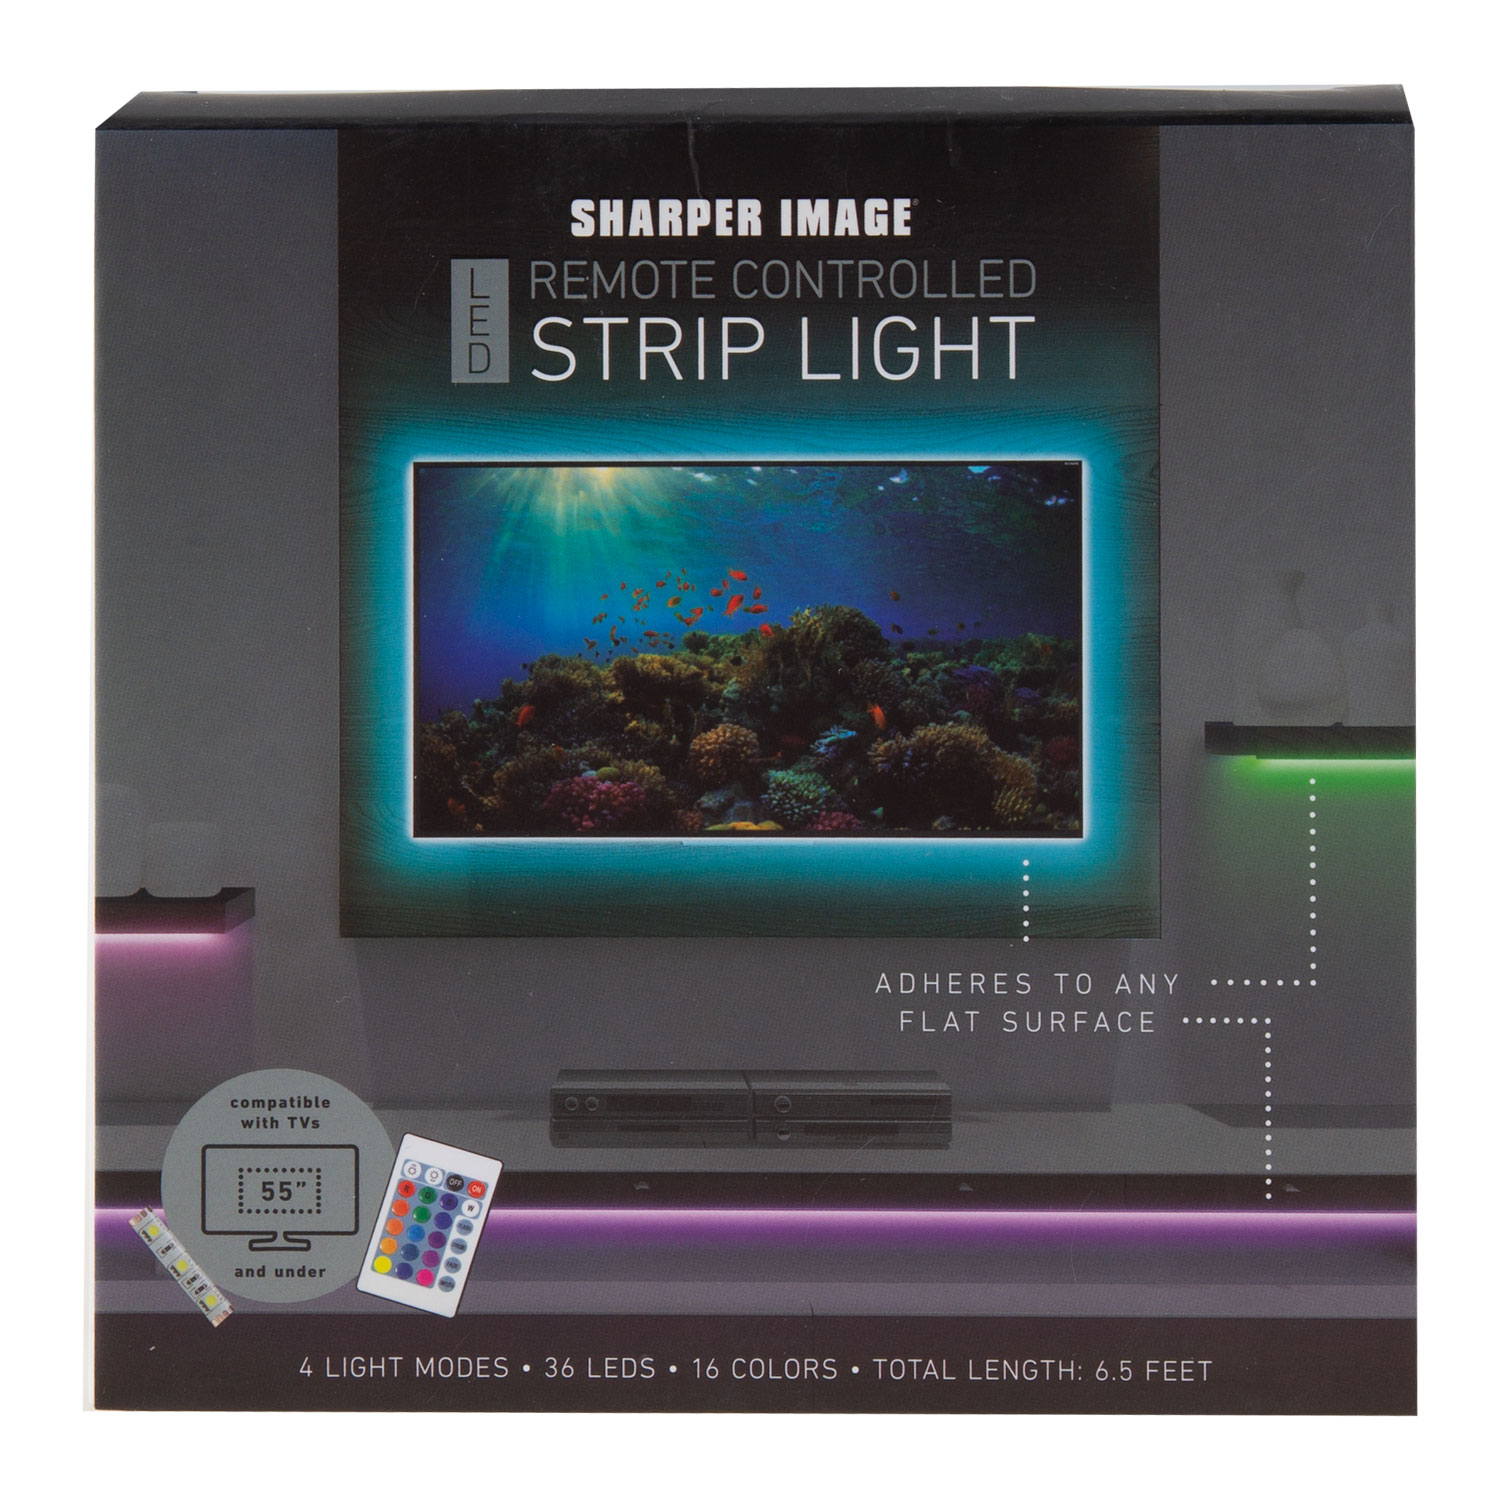 Sharper Image - 6.5' LED remote controlled strip light